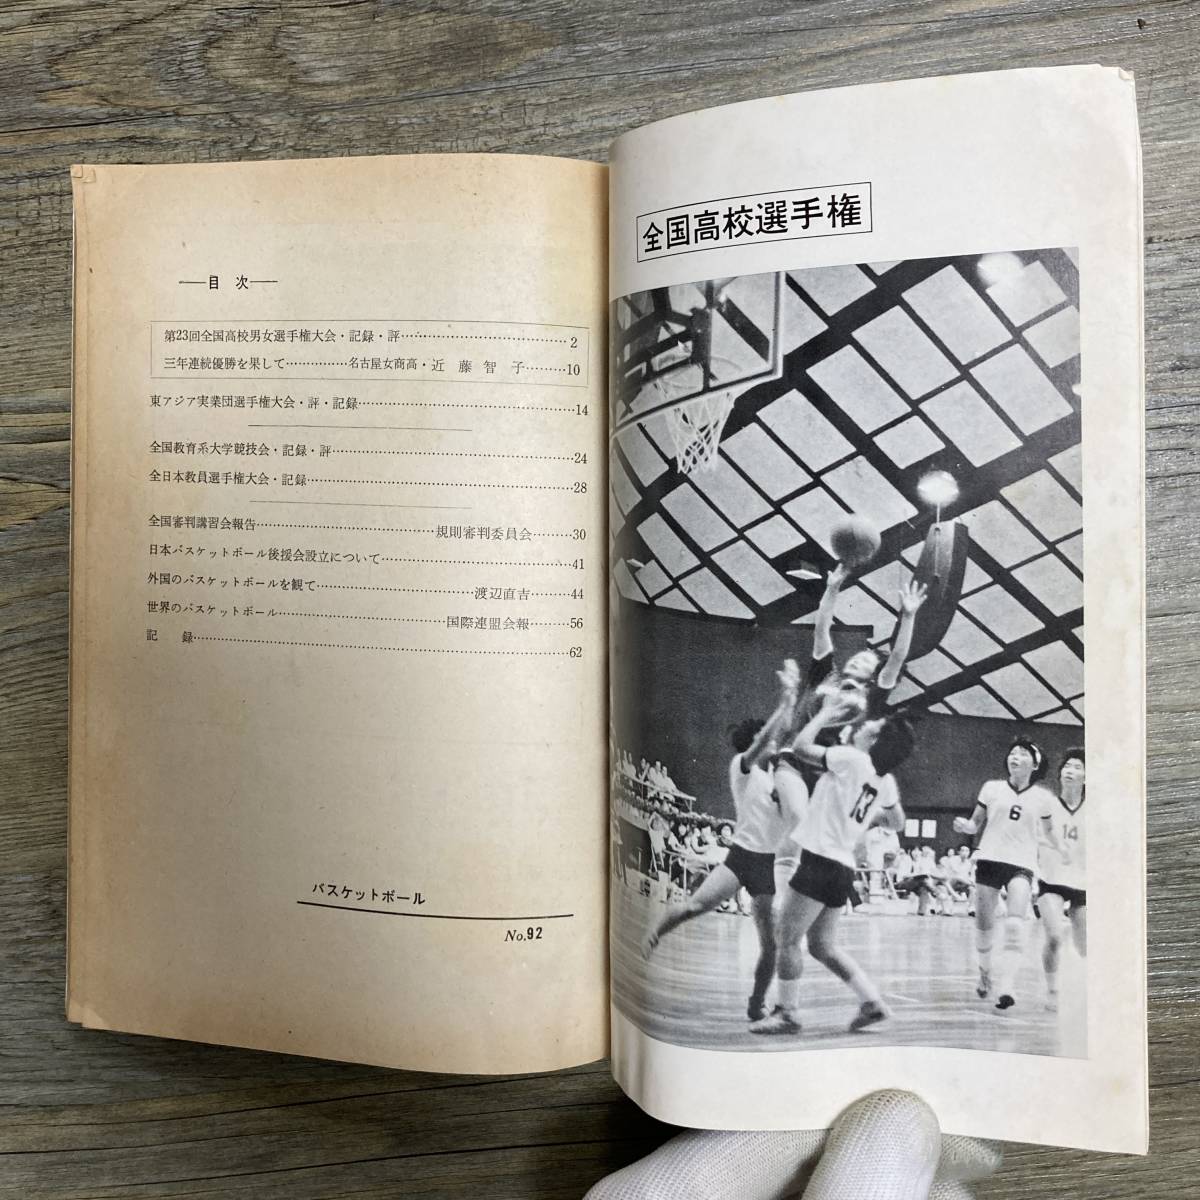 S-3068# баскетбол No.92 1970 год 9 месяц 30 день выпуск # вся страна средняя школа игрок право собрание соревнование результат оценка # Япония баскетбол ассоциация #